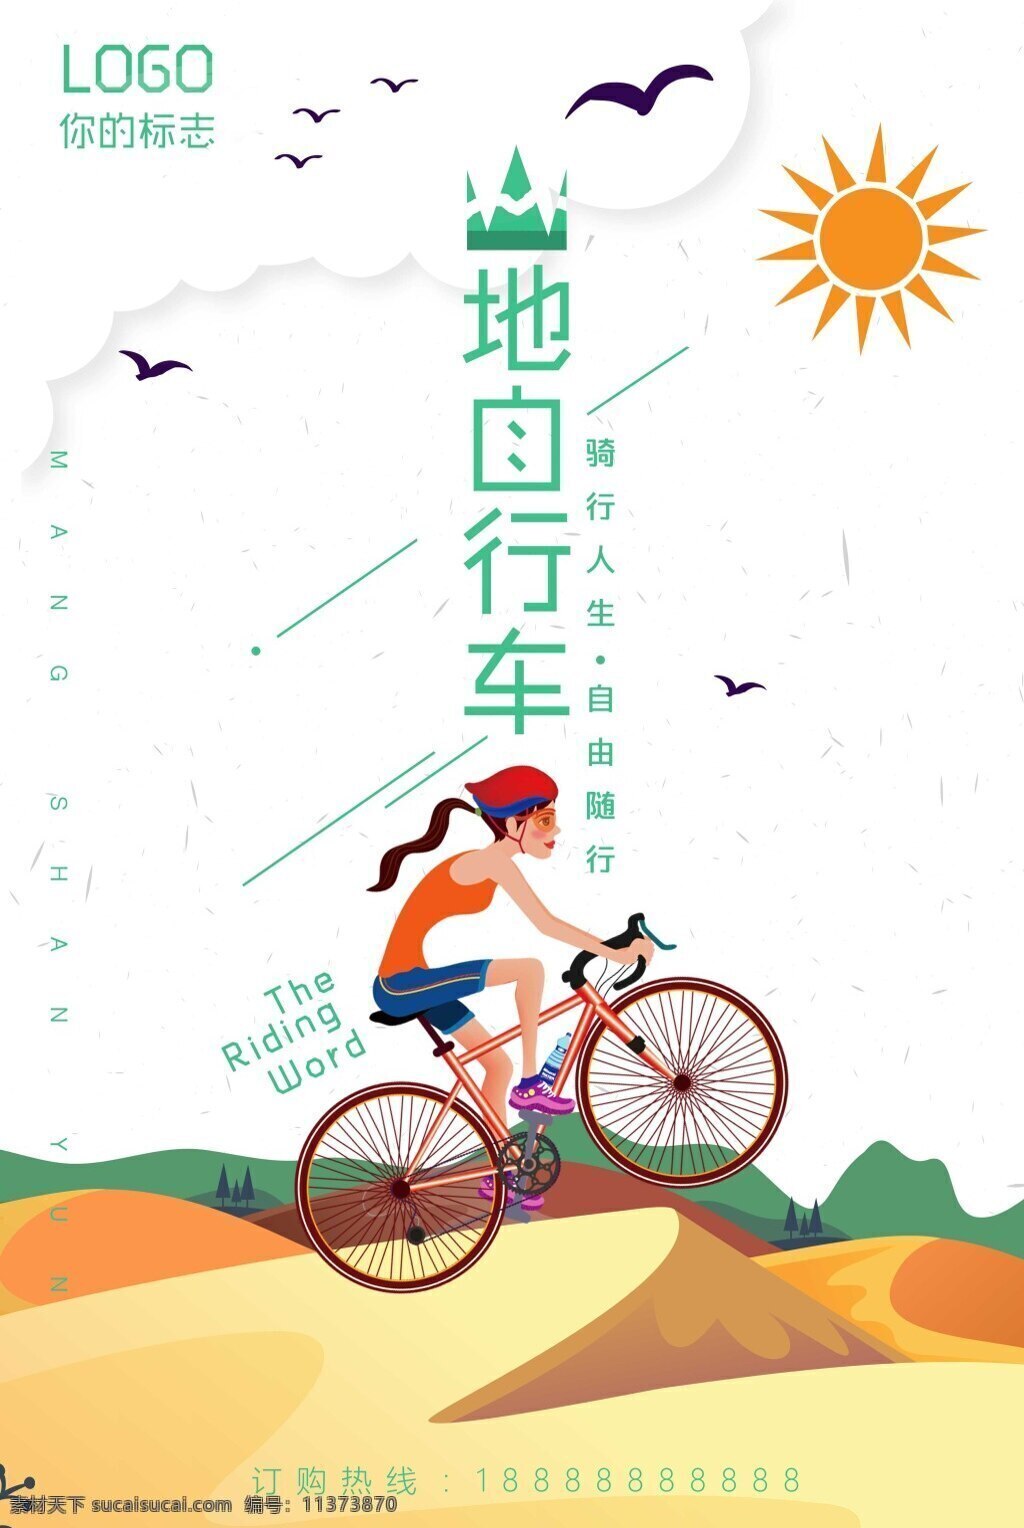 运动 山地 自行车 海报下载 骑行 旅行 骑行海报 骑行天下 骑行西藏 西藏之旅 绿色骑行 乐在骑中 环游中国 环游世界 公路旅行 运动健身 孤独行者 骑行驴友